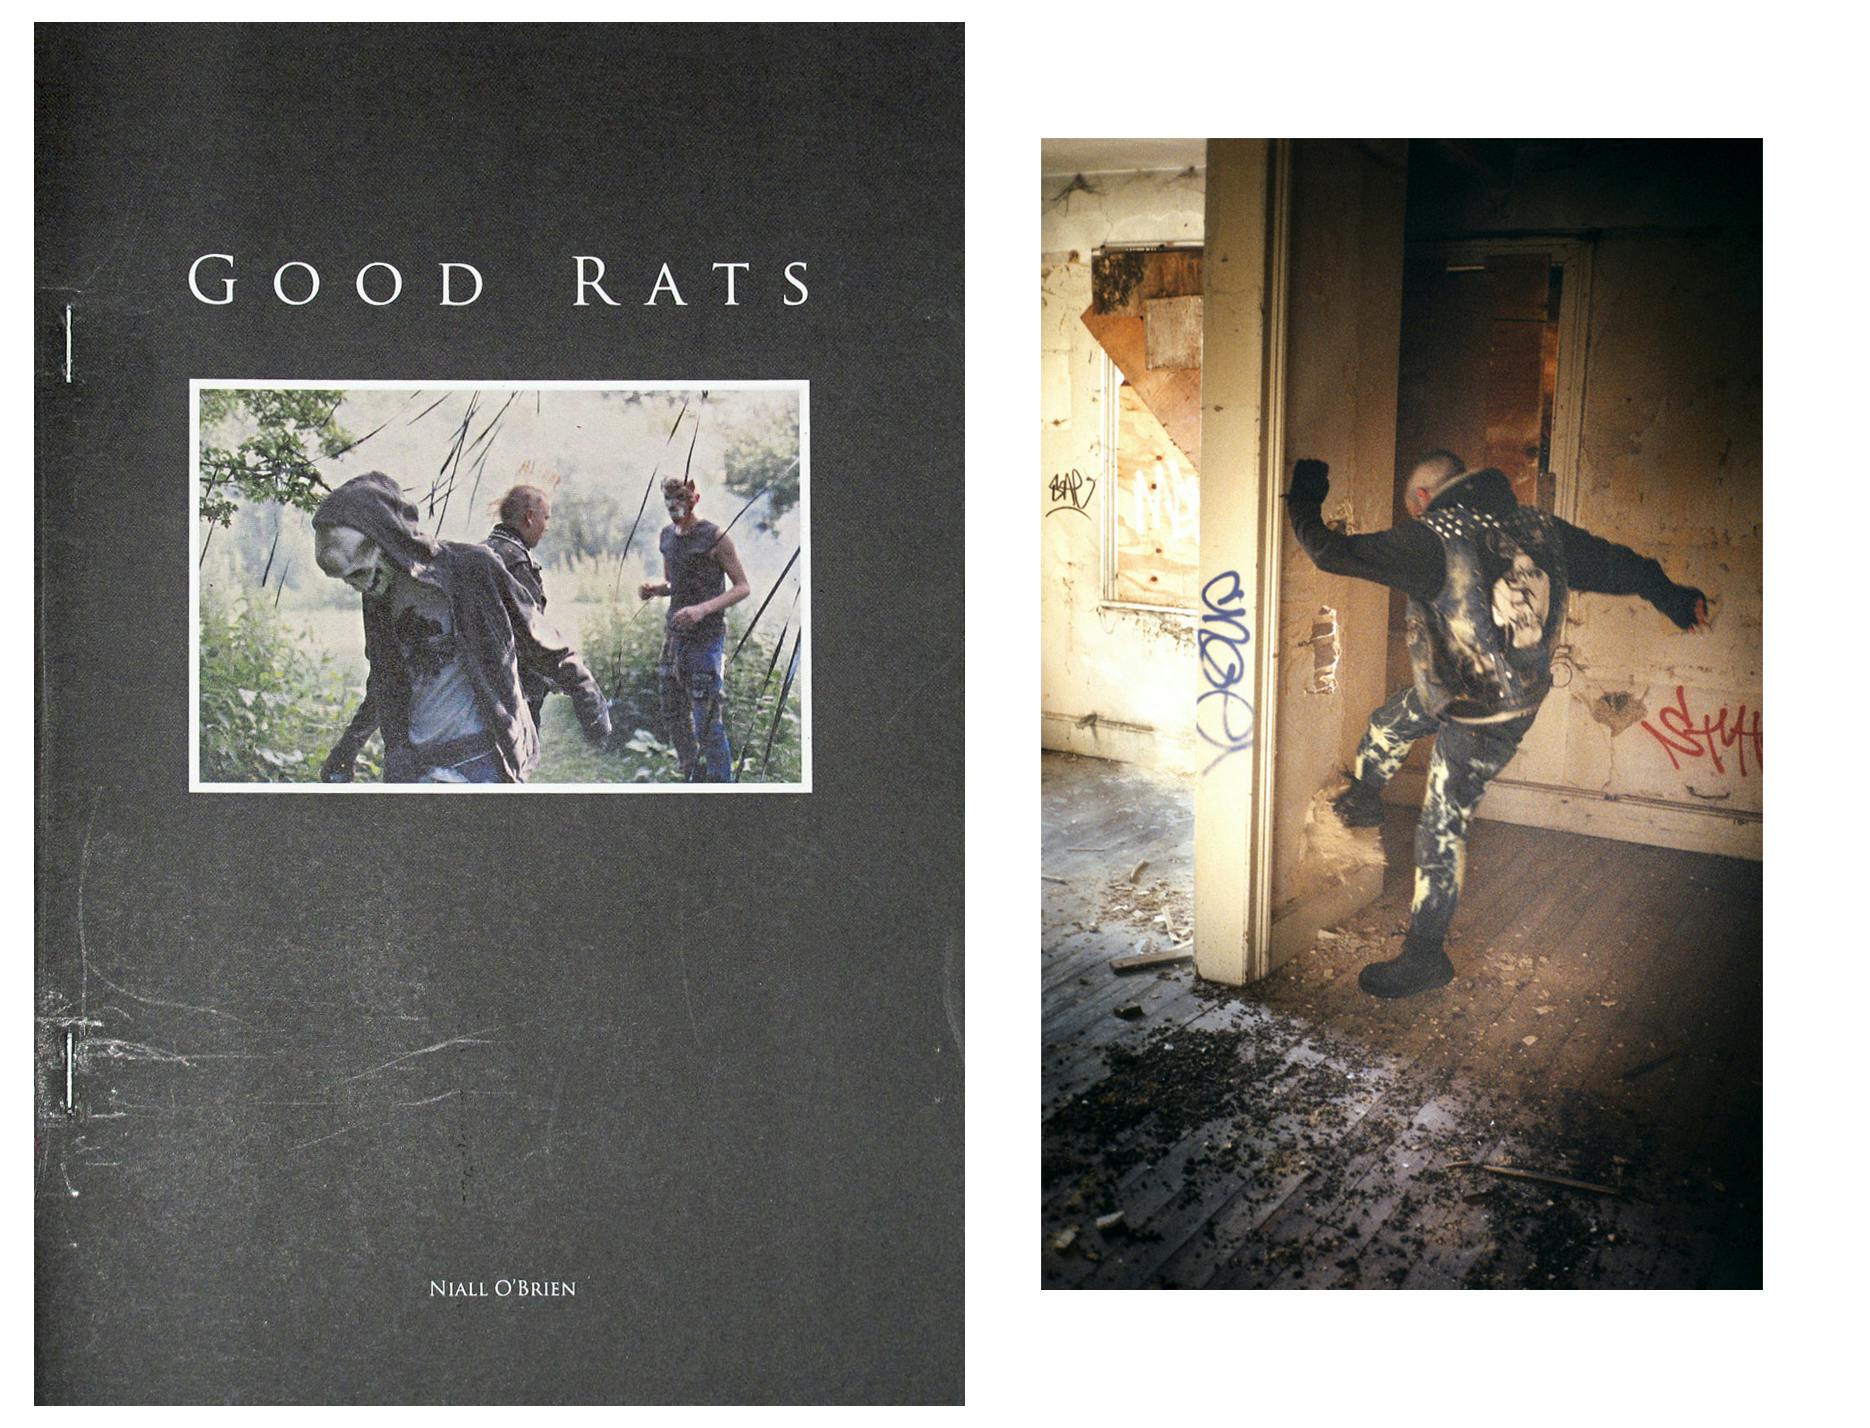 Left: "Good Rats" Book, right: ______ Good Rats, Niall O'Brien.